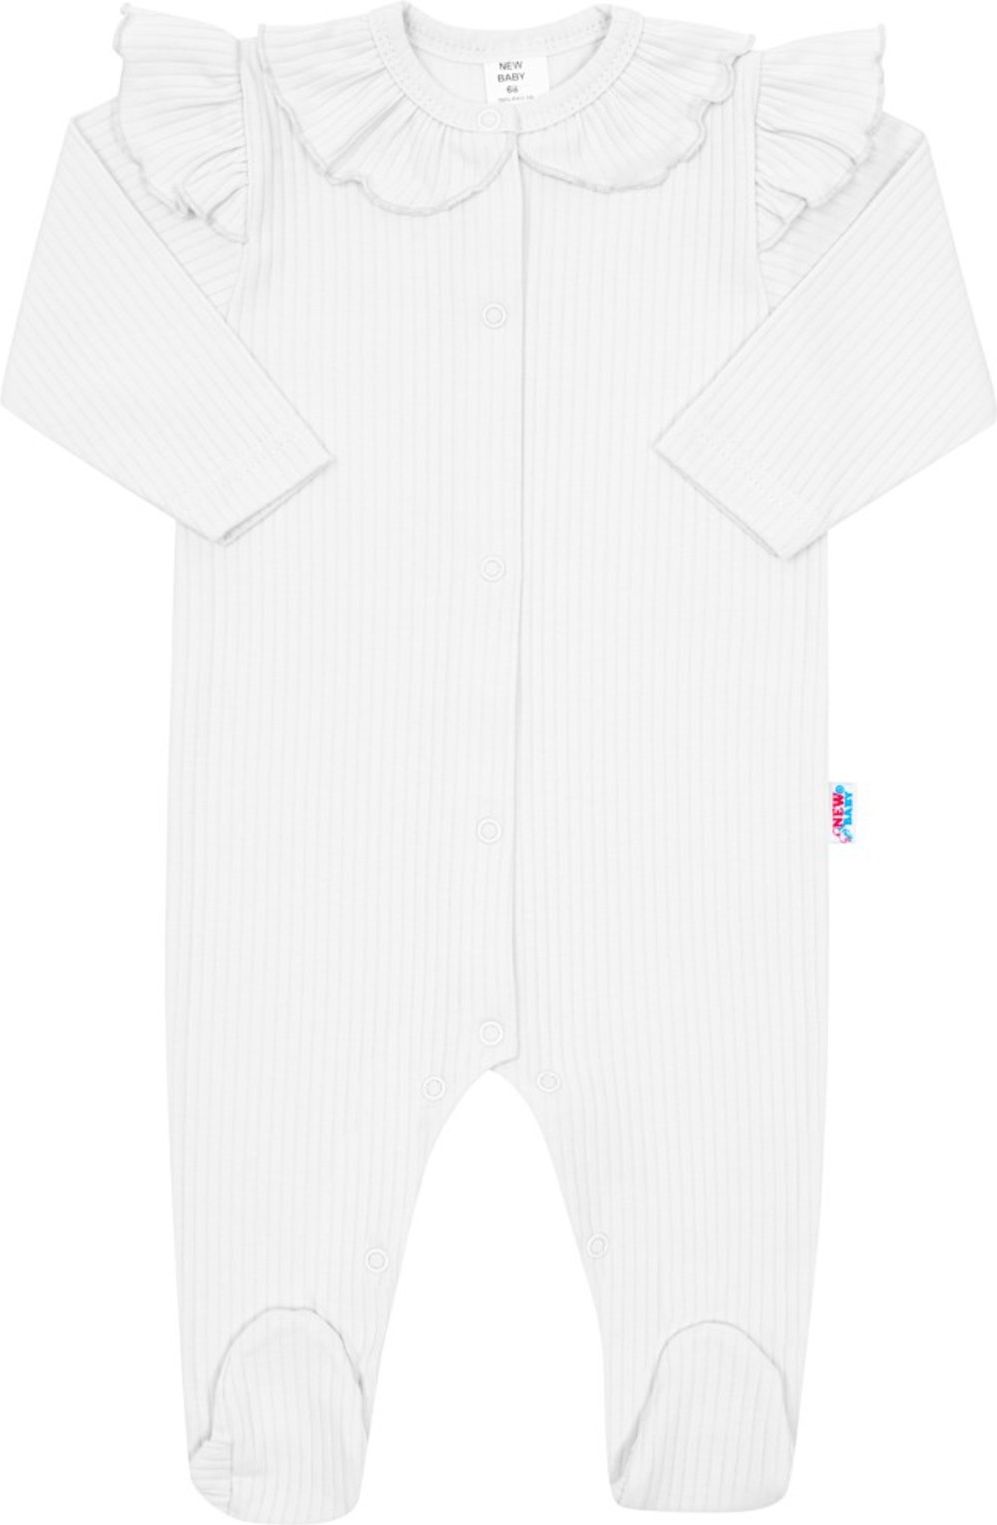 Kojenecký bavlněný overal New Baby Stripes bílý - obrázek 1